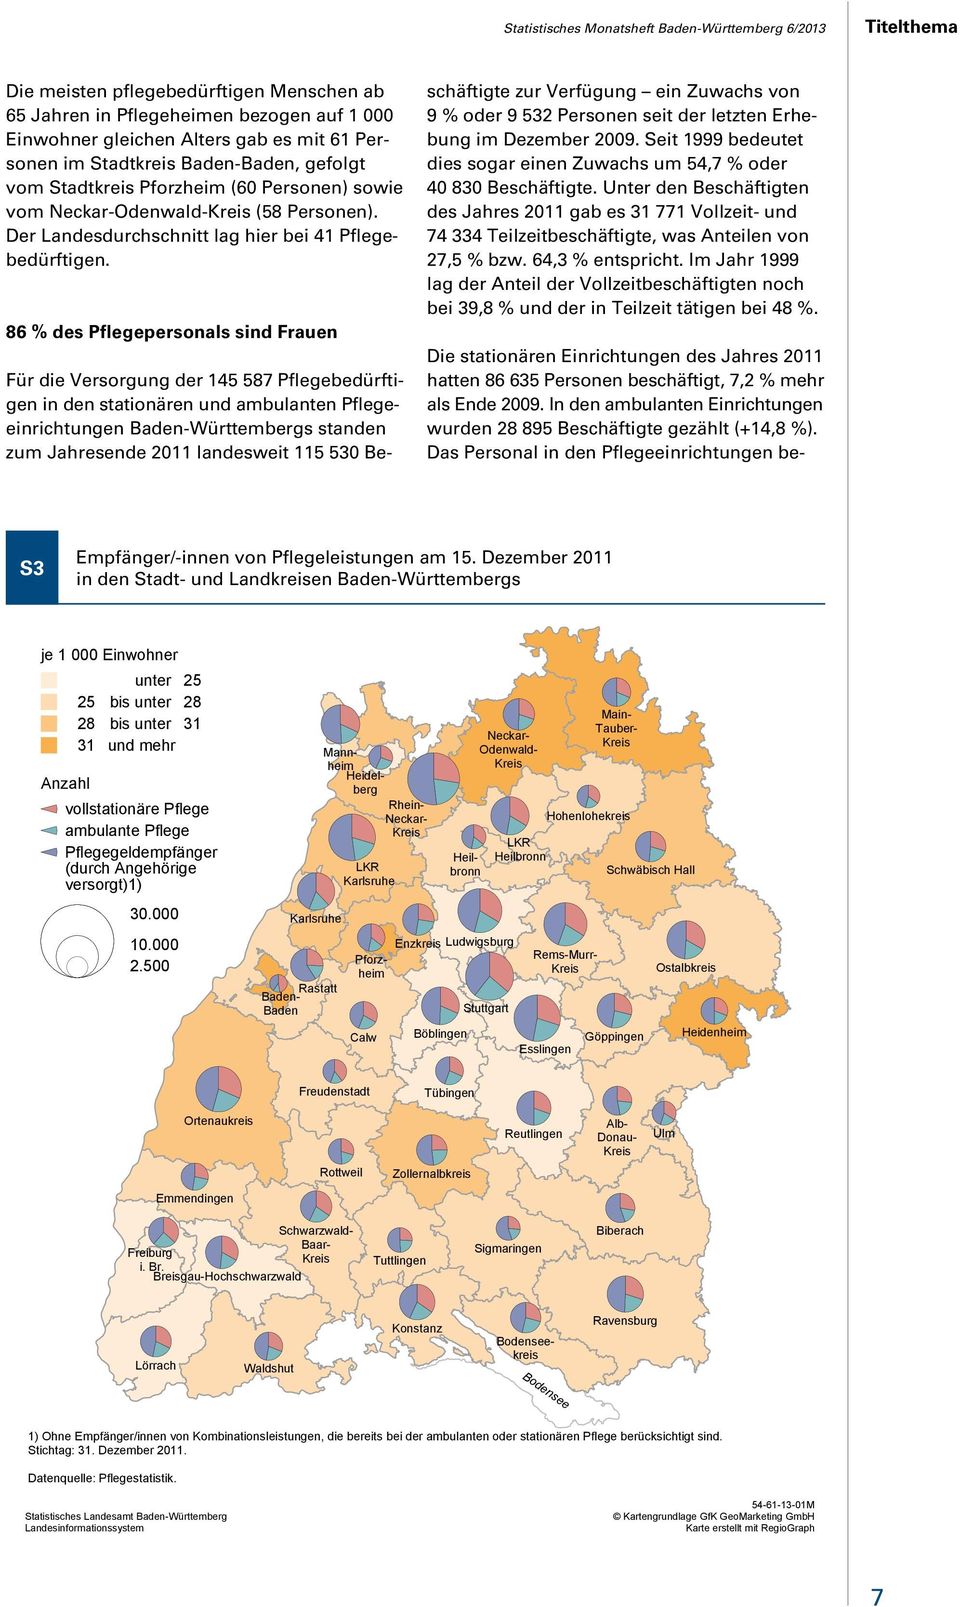 86 % des Pflegepersonals sind Frauen Für die Versorgung der 145 587 Pflegebedürftigen in den stationären und ambulanten Pflegeeinrichtungen Baden-Württembergs standen zum Jahresende 2011 landesweit